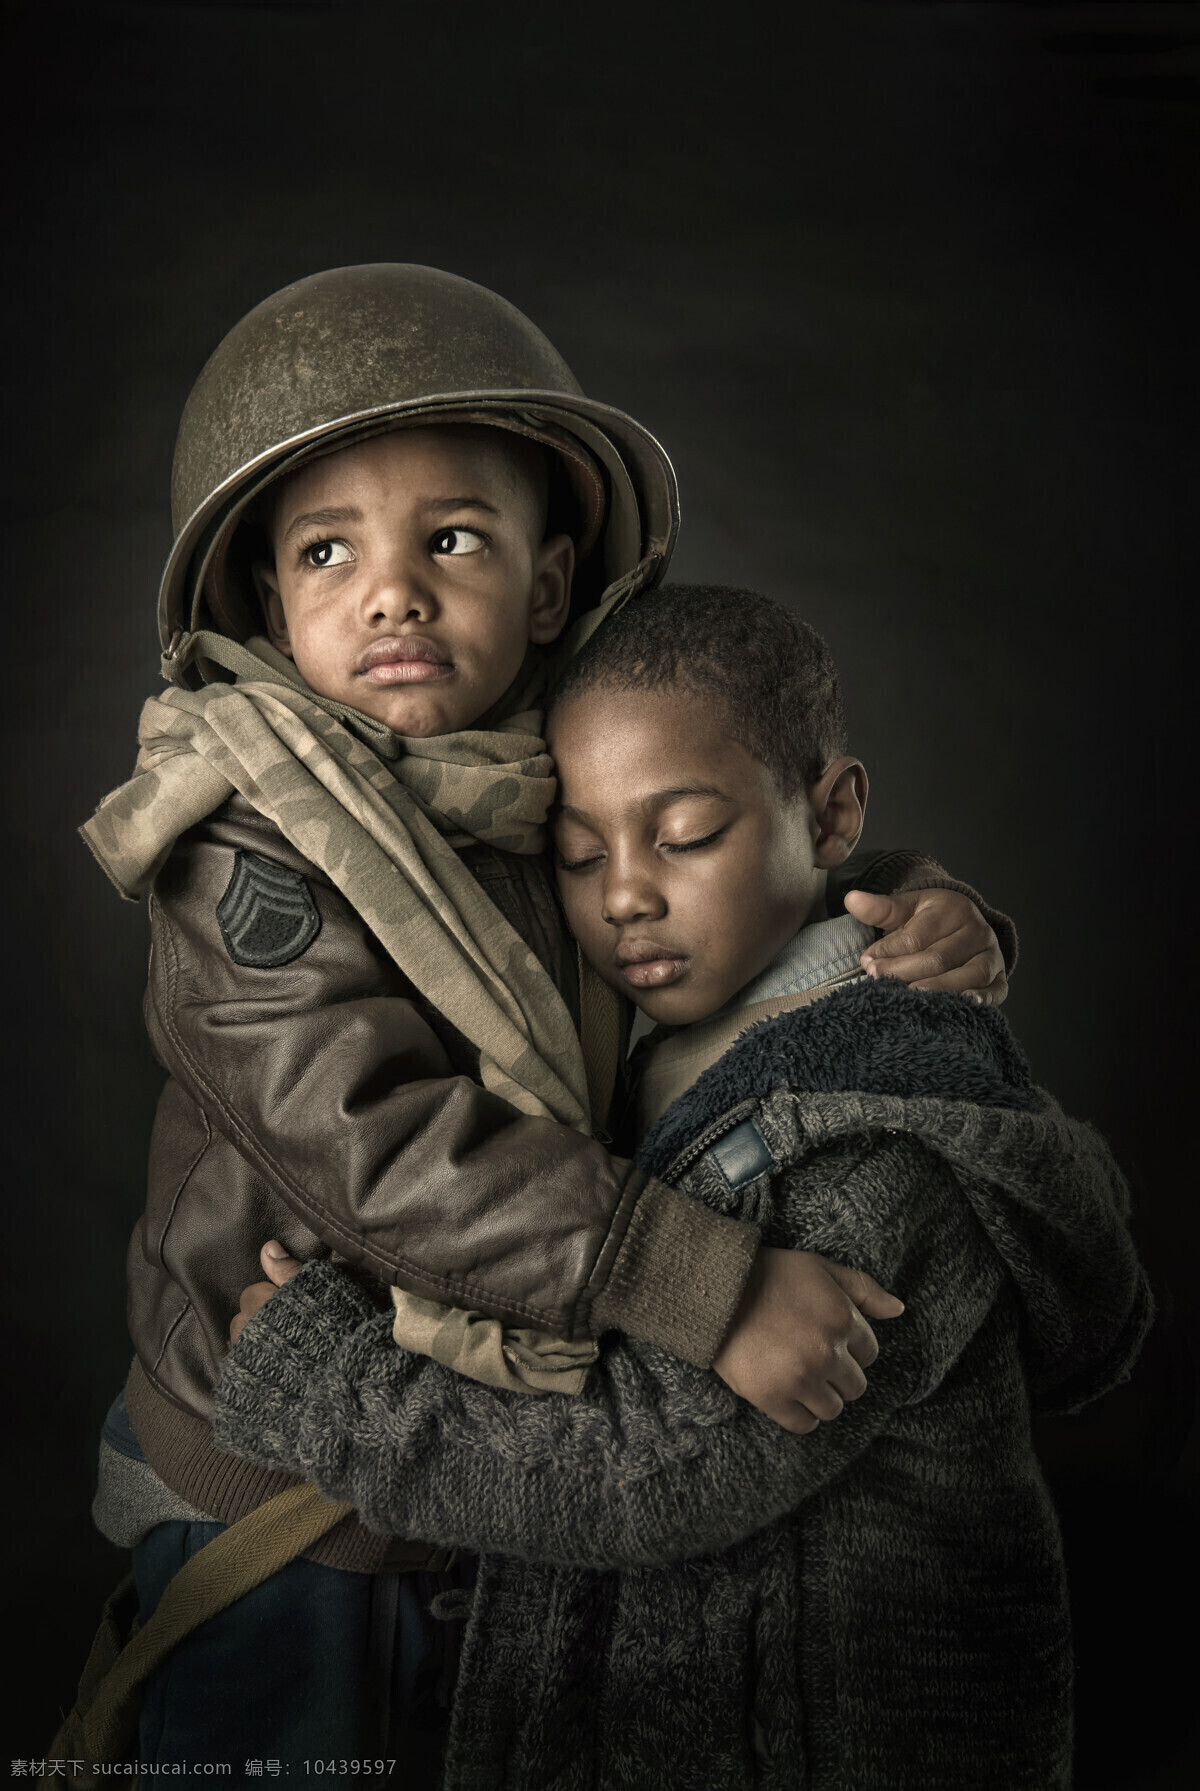 战争 中 儿童 战争中的儿童 童子军 黑人儿童 小男孩 外国男孩 外国儿童 戴头盔的男孩 军事武器 现代科技